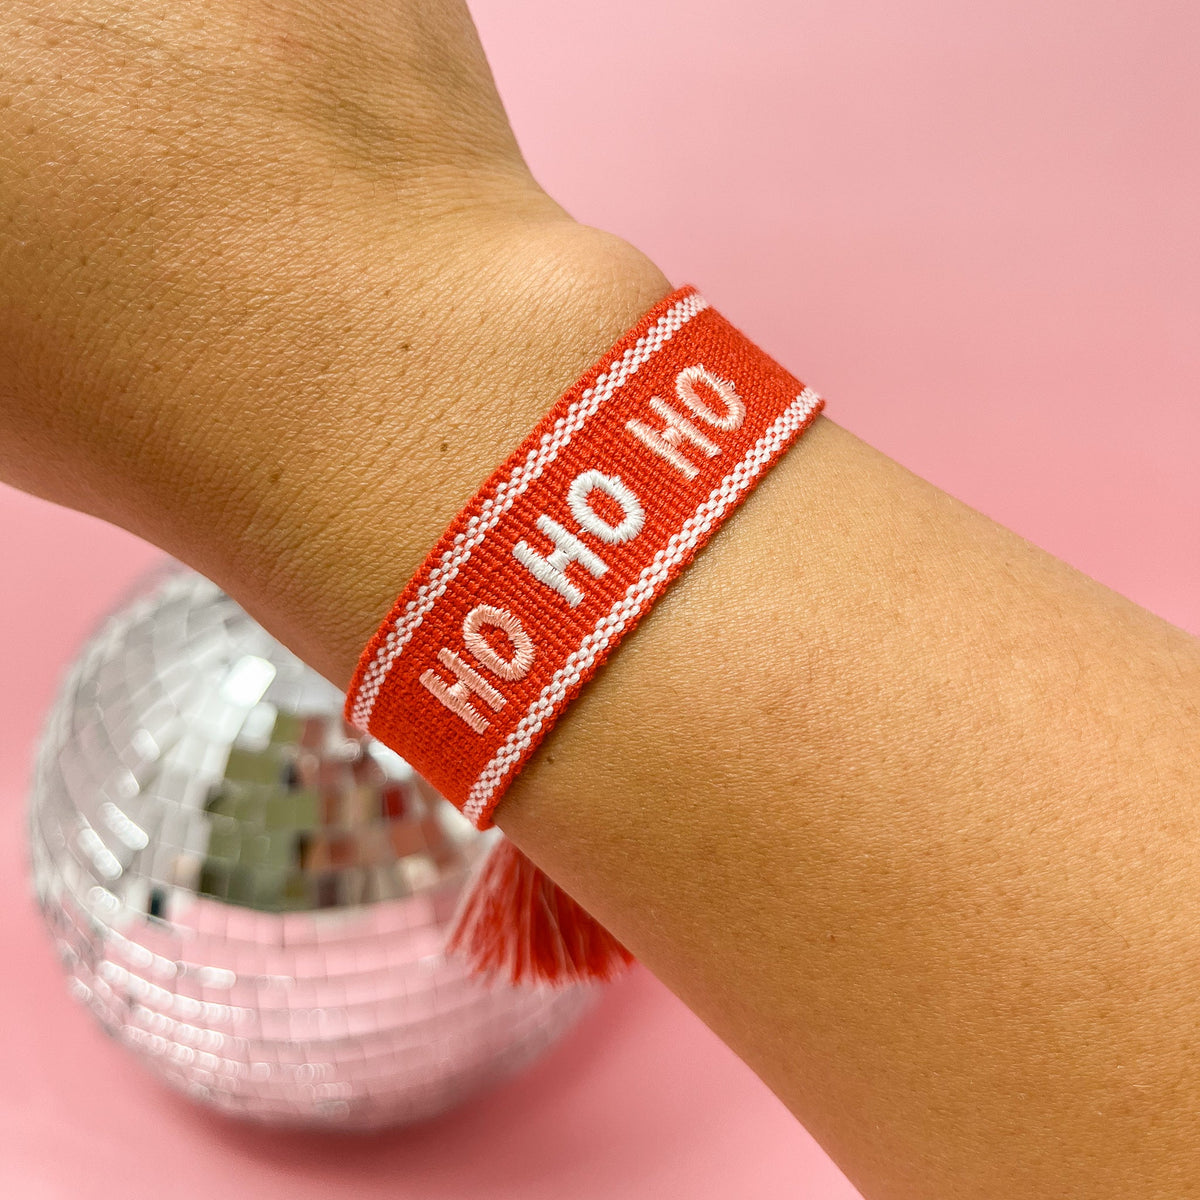 Holiday Woven Word Bracelets - Ho Ho Ho